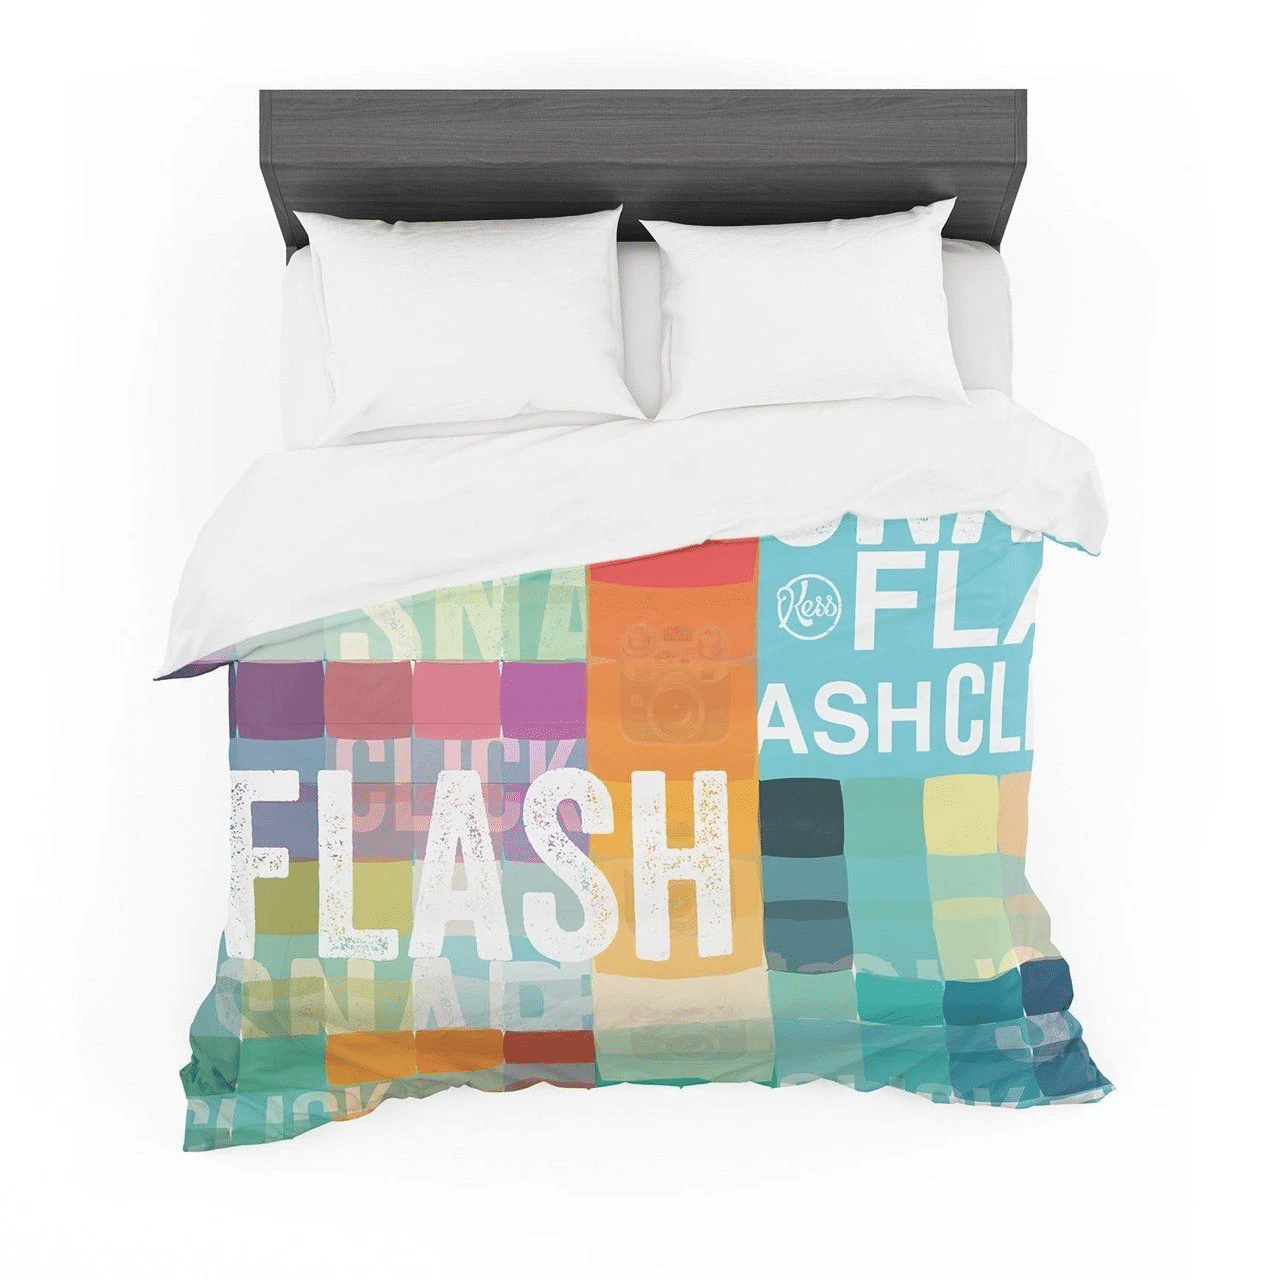 "Flash" Cotton Bedroom Duvet Cover Bedding Sets